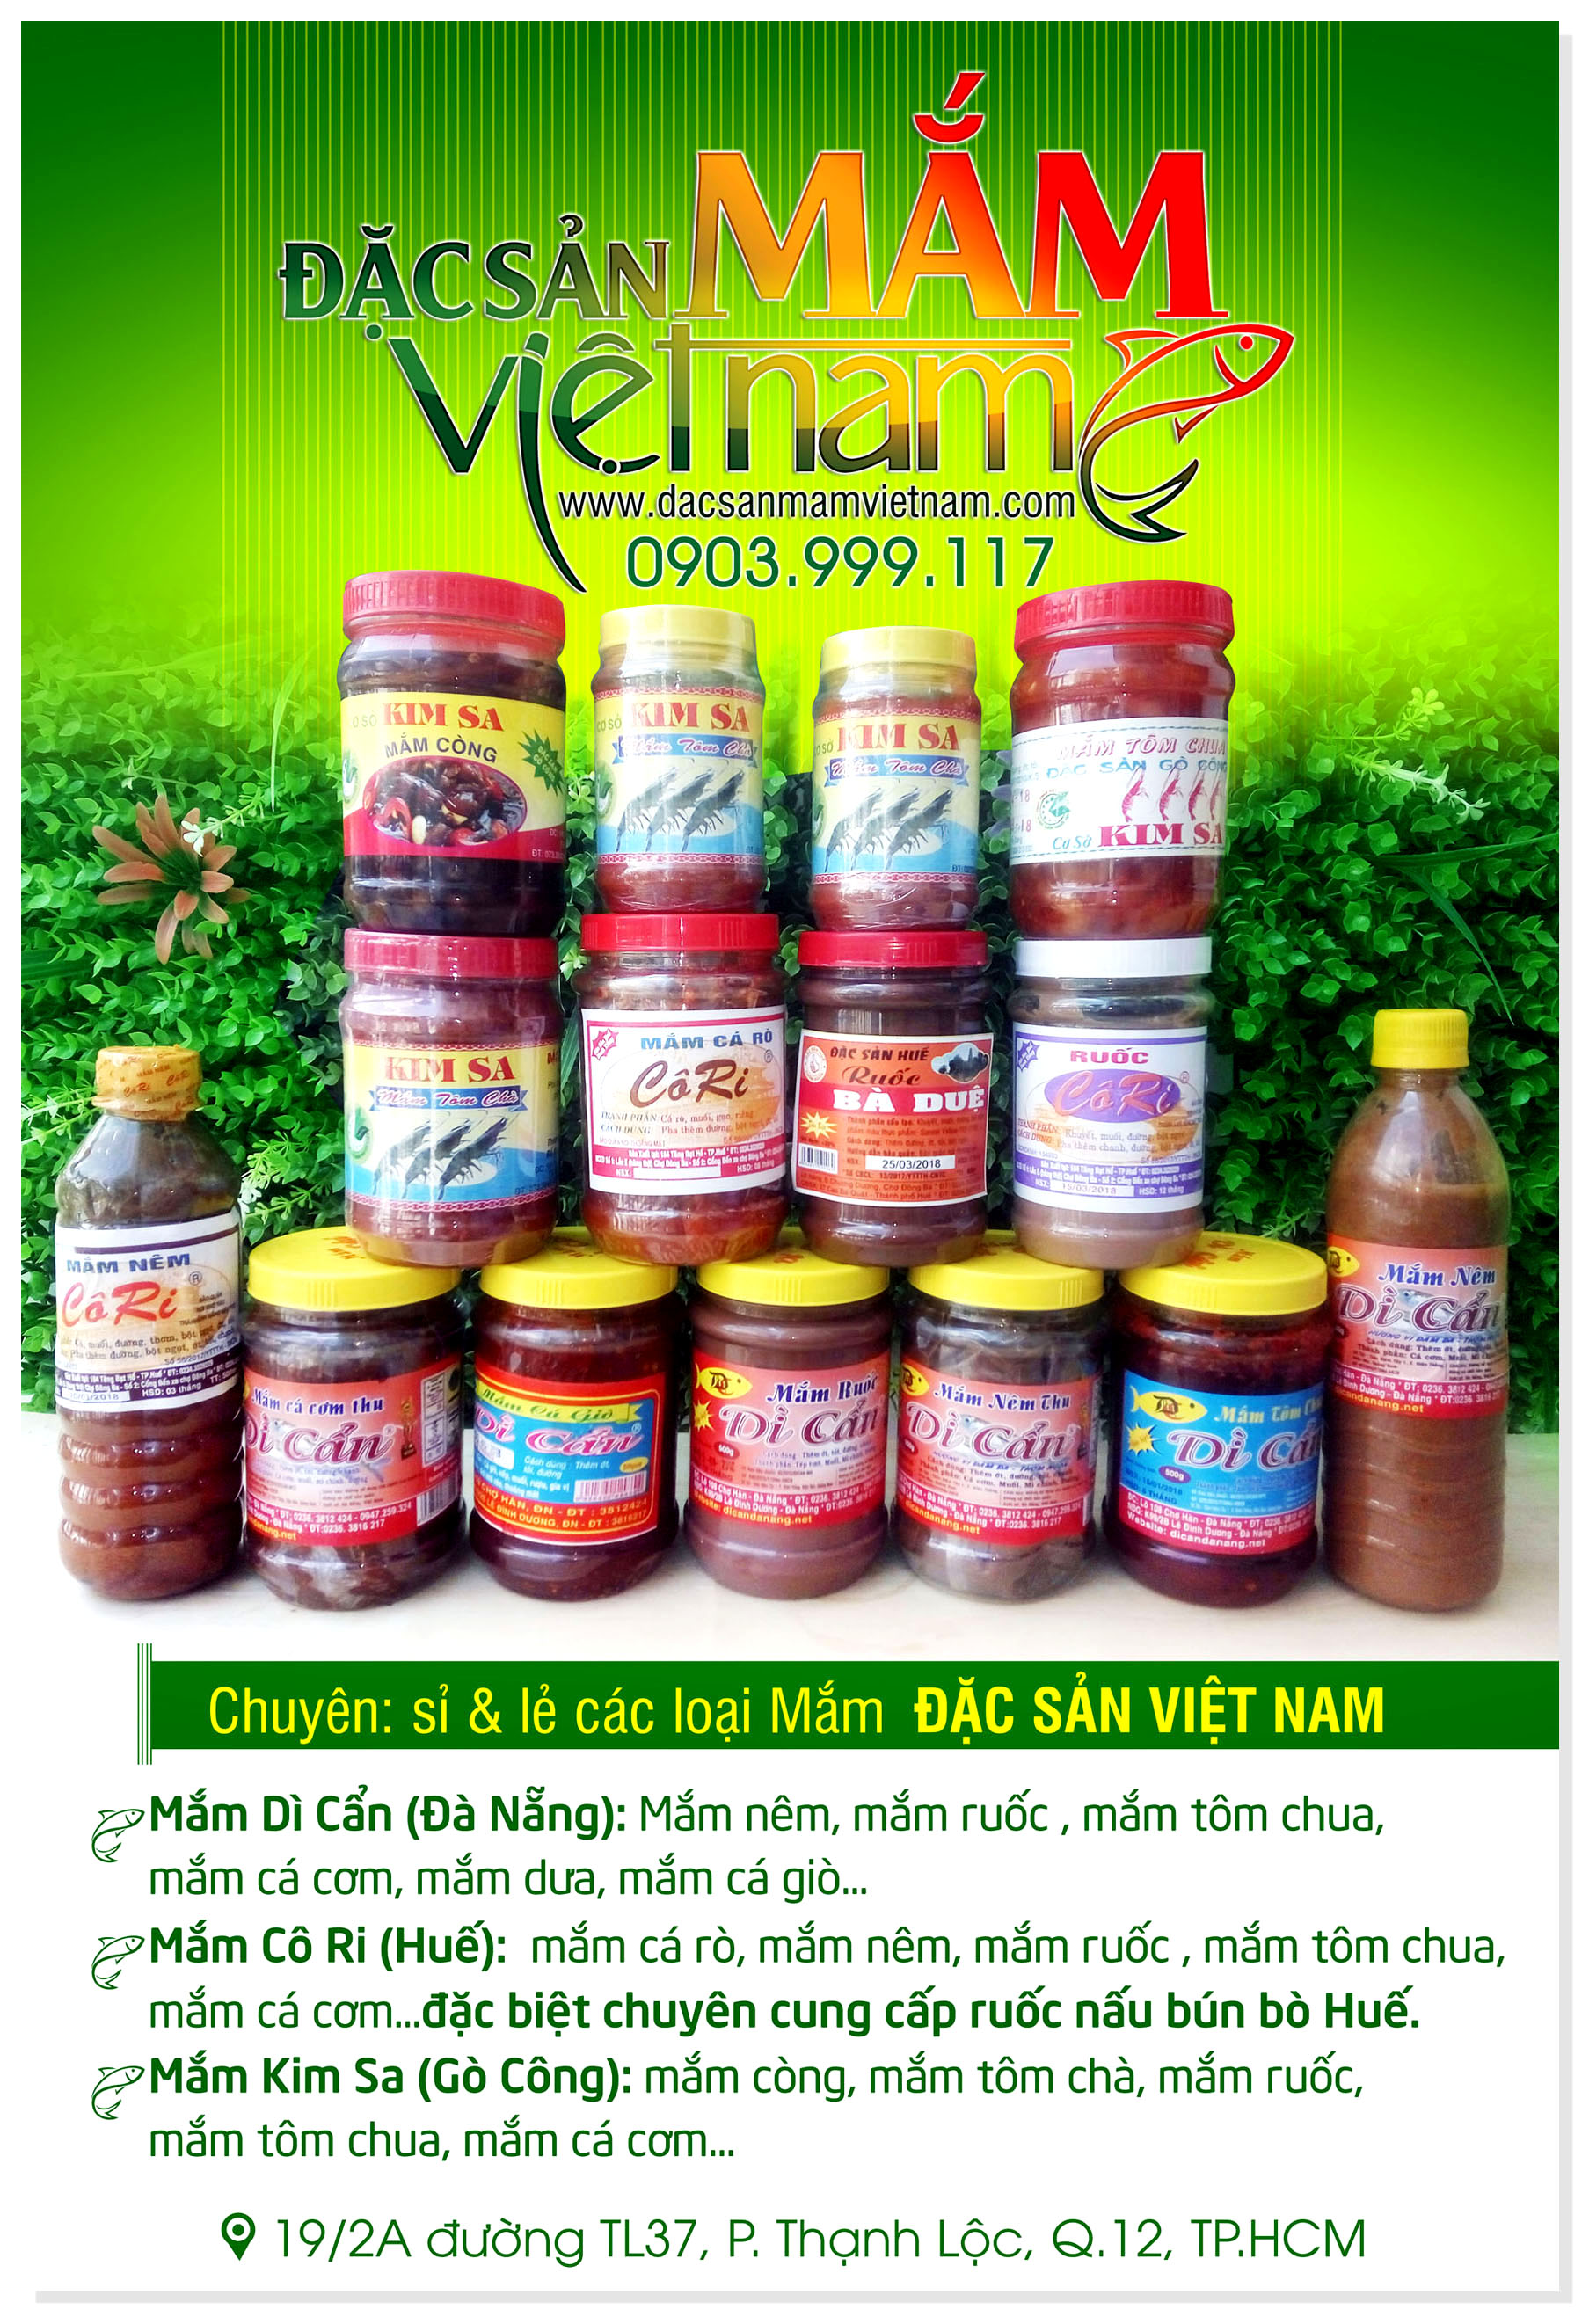 Poster đặc sản mắm Việt Nam